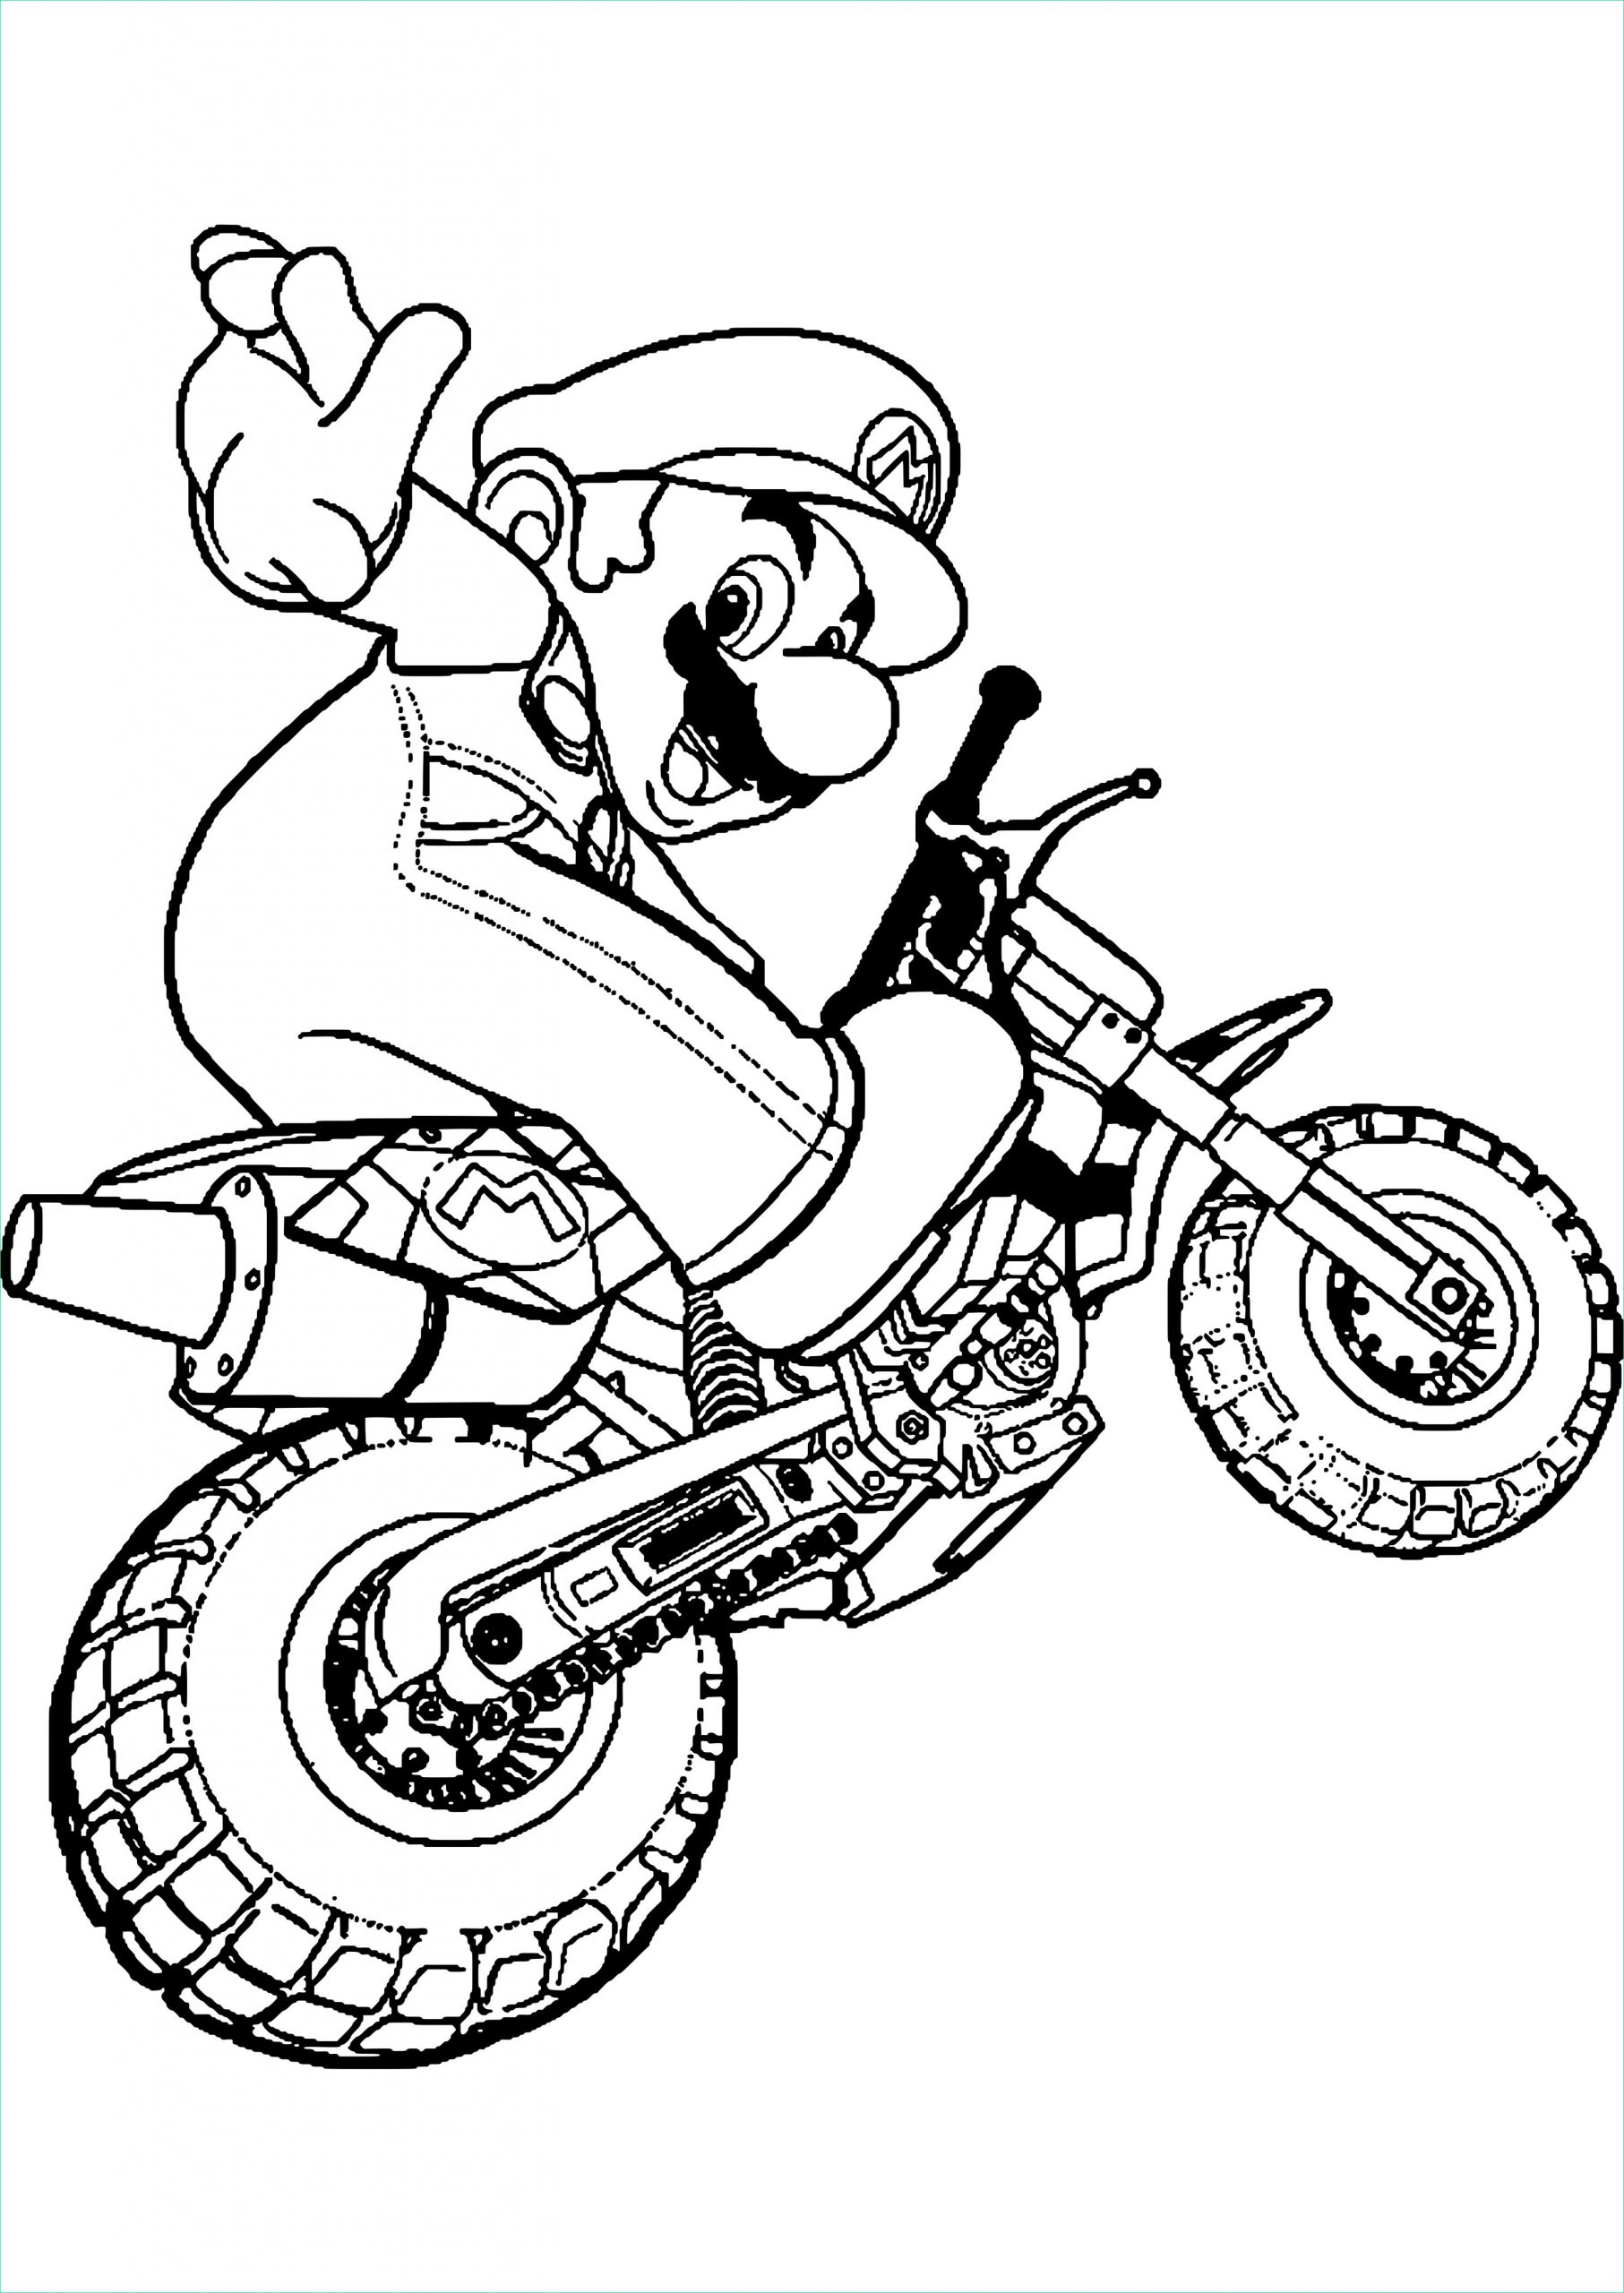 coloriage quad coloriage motos cross gratuits dessincoloriage destine dessin a imprimer de moto cross gratuit